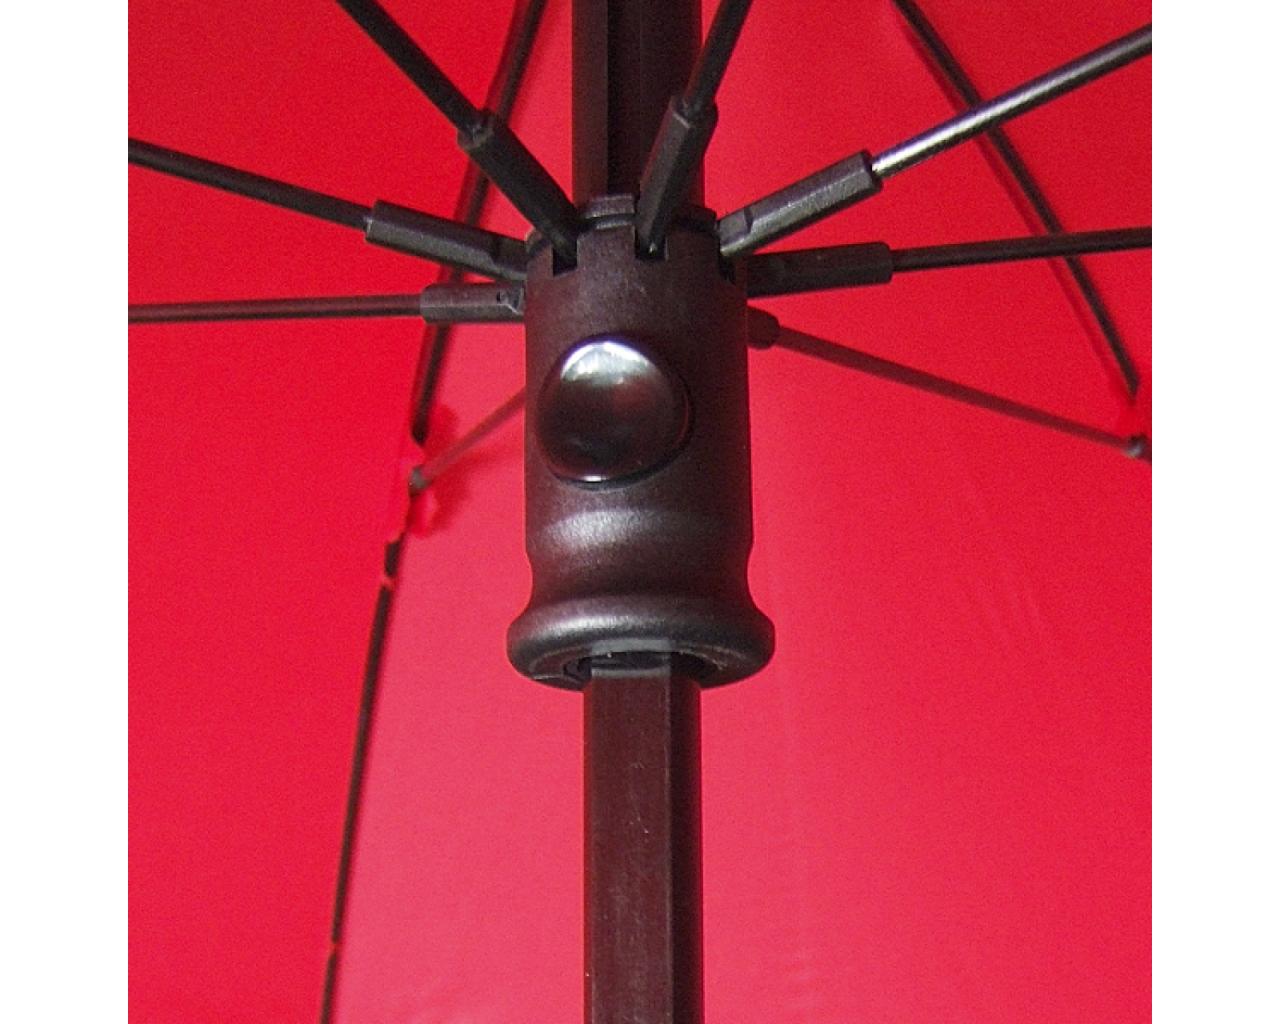 Der Regenschirm Euroschirm Birdiepal Outdoor